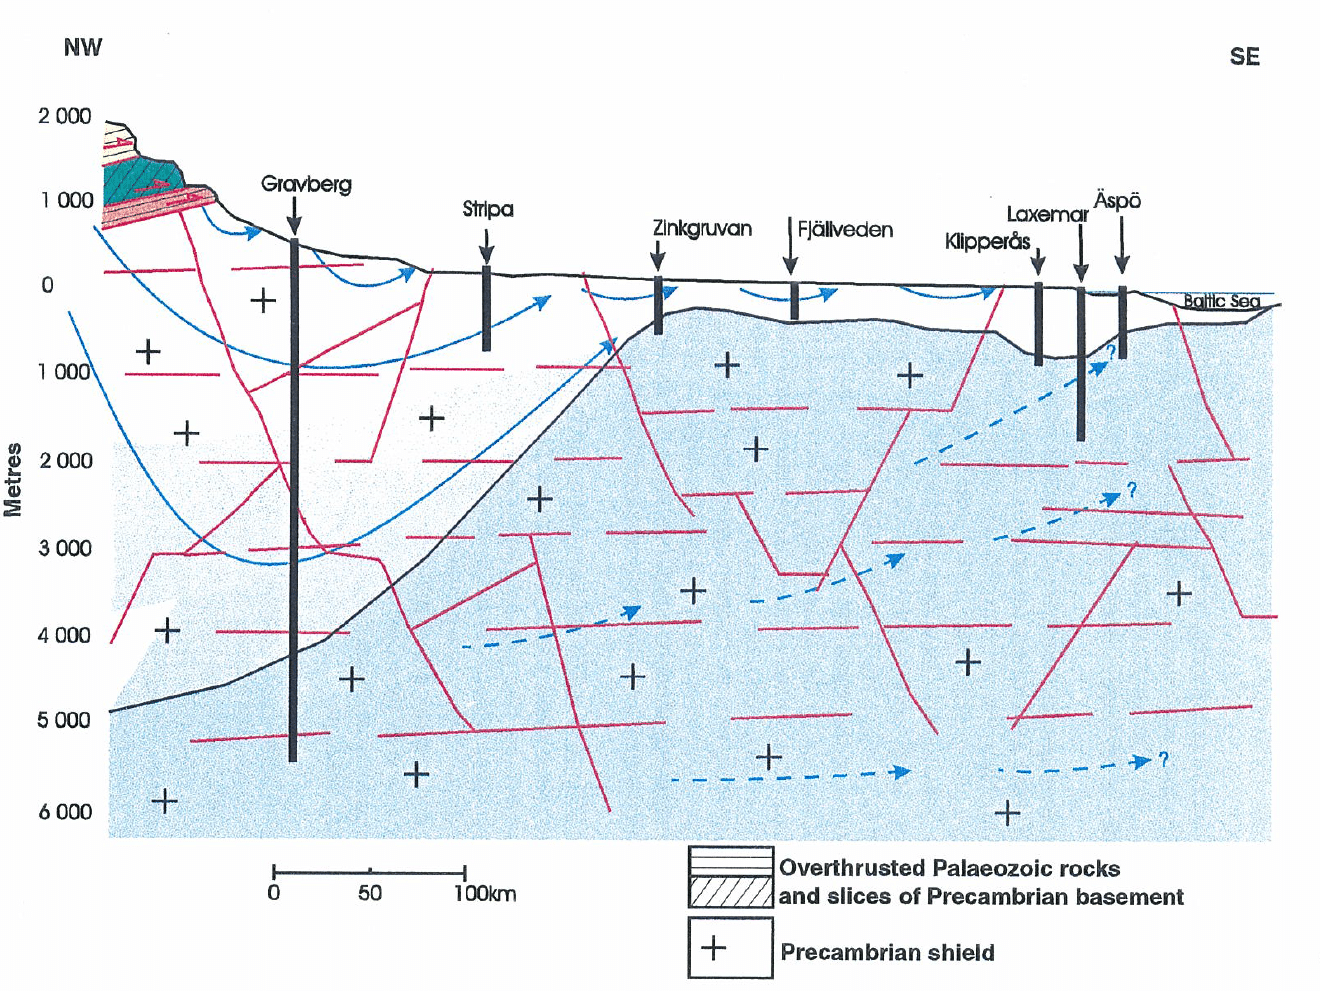 Figur 123-4: Konzeptuelles Modell über die chemische Gliederung der Grundwässer (blau = hochsaline alte Wässer, hellblau bis weiss = meteorische jüngere Wässer) und die möglichen Zirkulationsspfade im kristallinen Untergrund Schwedens („Precambrian shield“). Die hier gezeigte Tiefbohrung in Gravberg zeigt einen Einfluss meteorischer Frischwässer bis in grosse Tiefen von 4 bis 5 km. Quelle: SKB (1998).